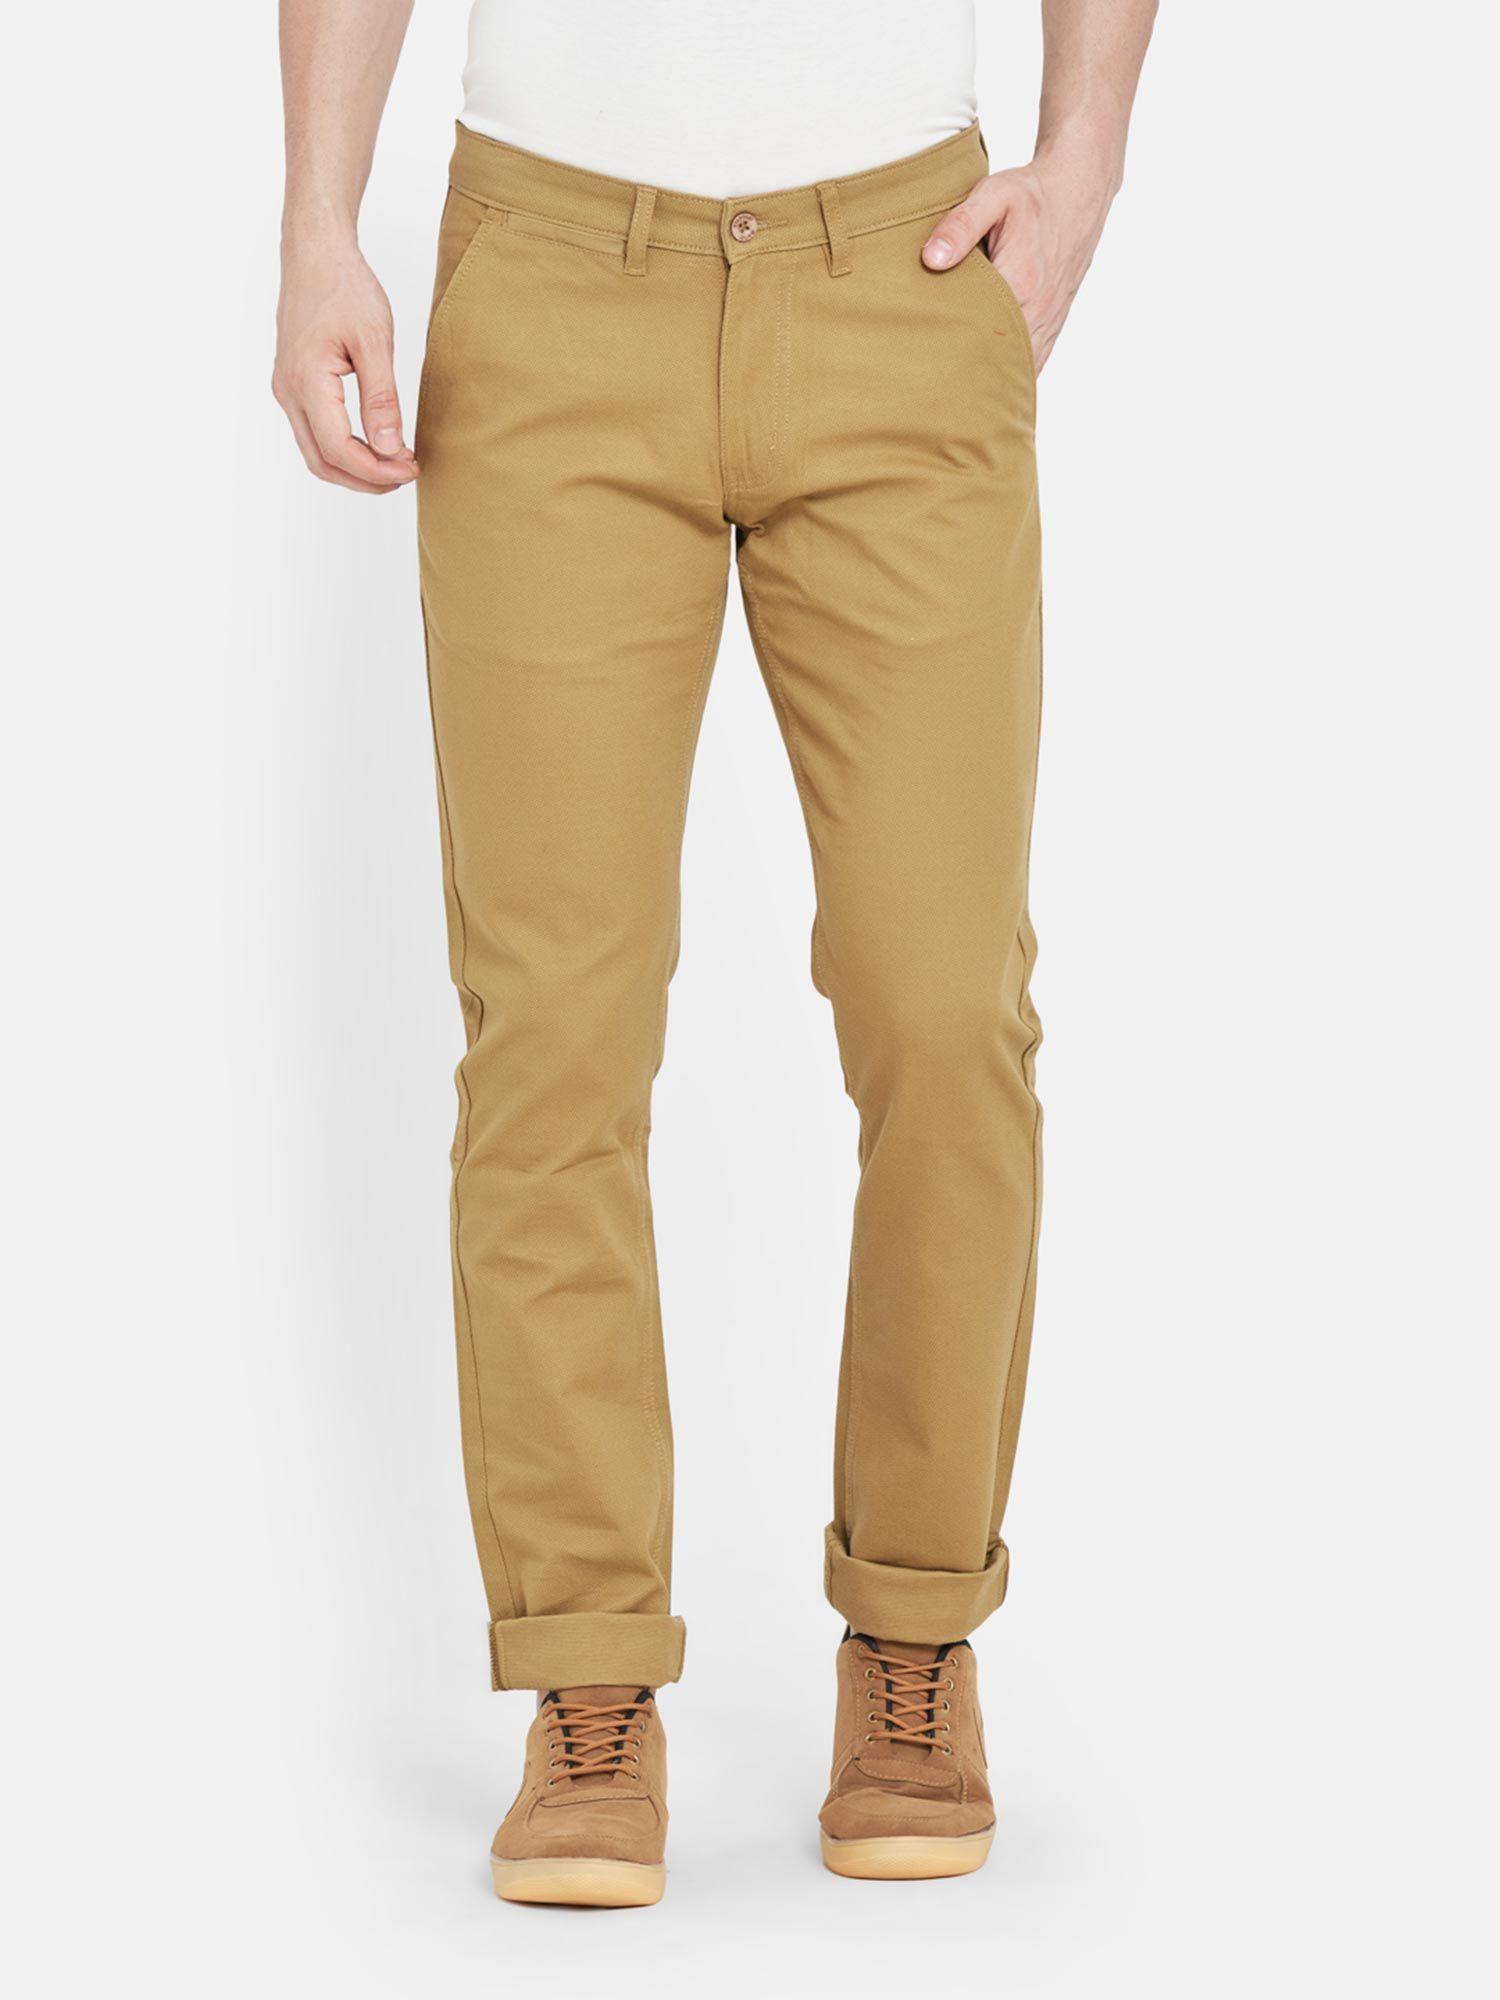 men's-cotton-slim-fit-khaki-trousers